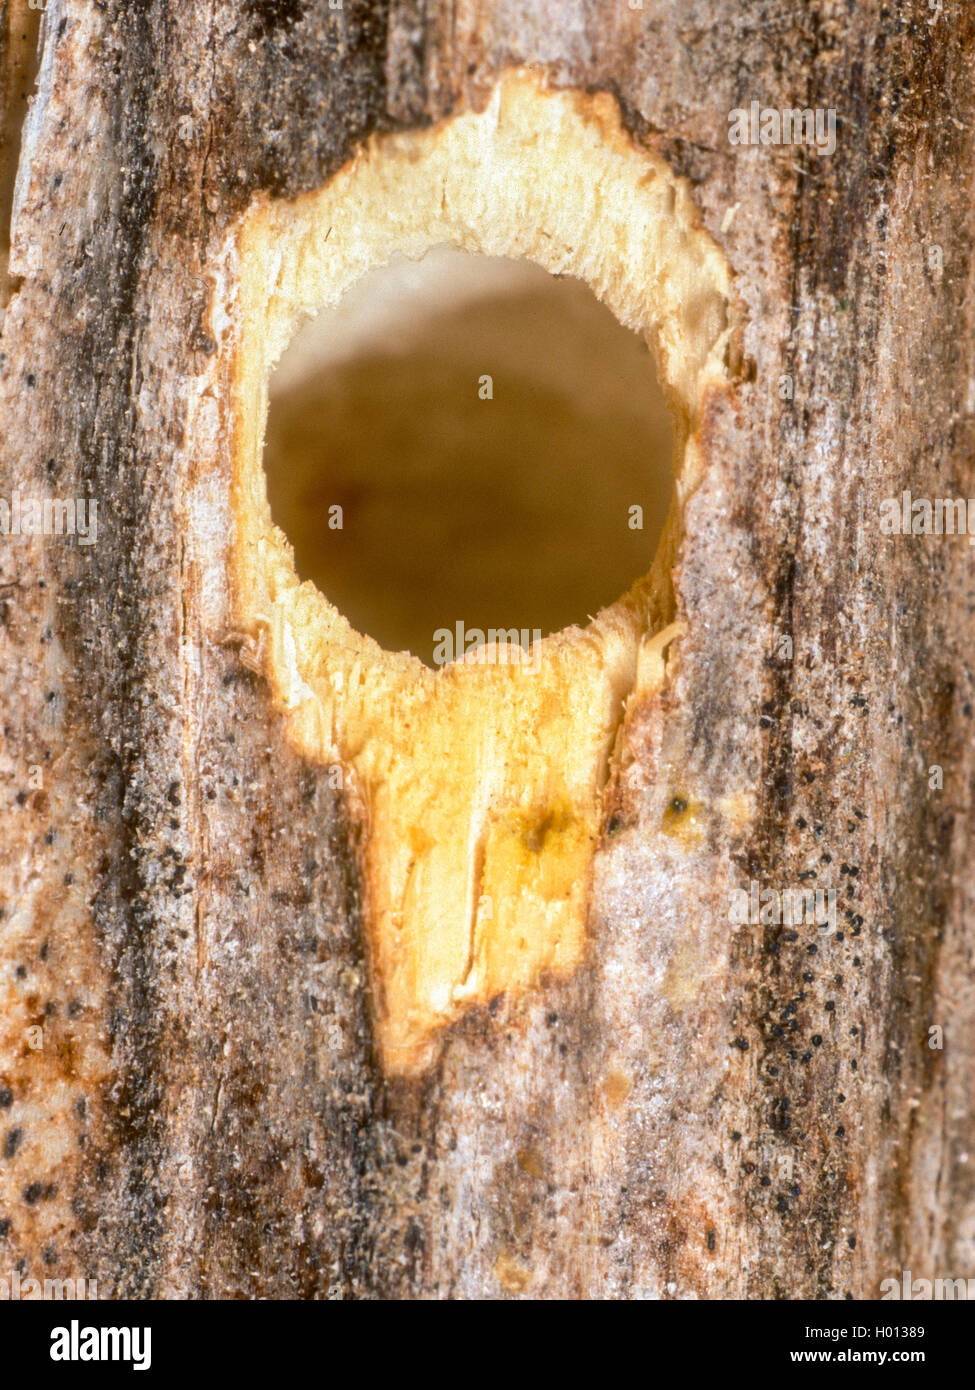 Mason bee (Osmia tridentata), anide la entrada en una planta de tallo, Alemania Foto de stock